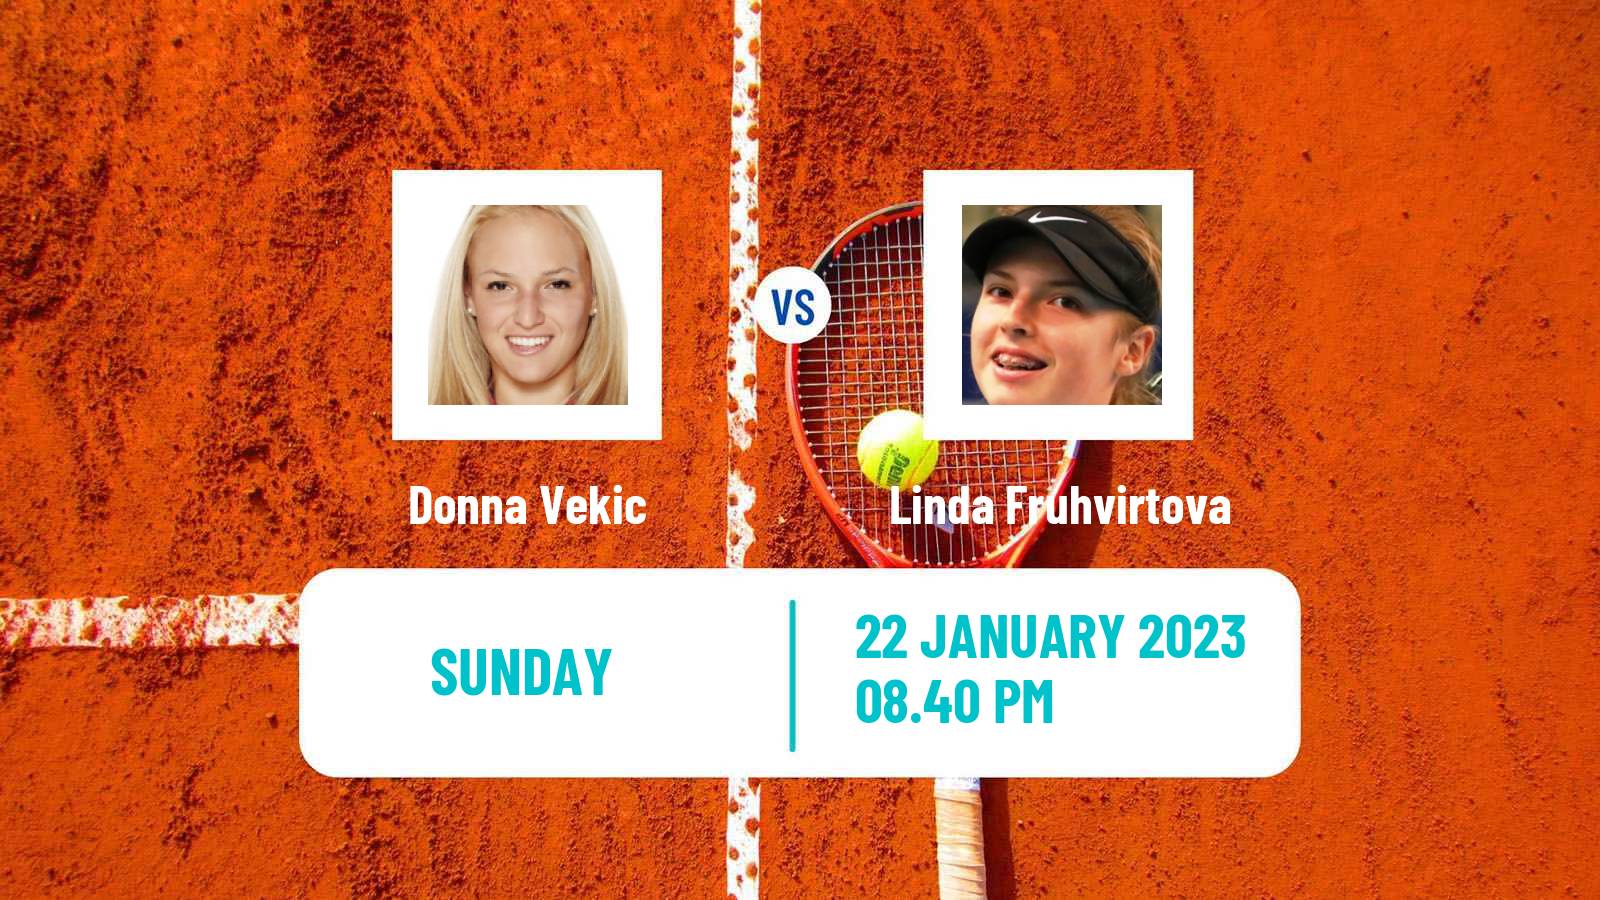 Tennis WTA Australian Open Donna Vekic - Linda Fruhvirtova